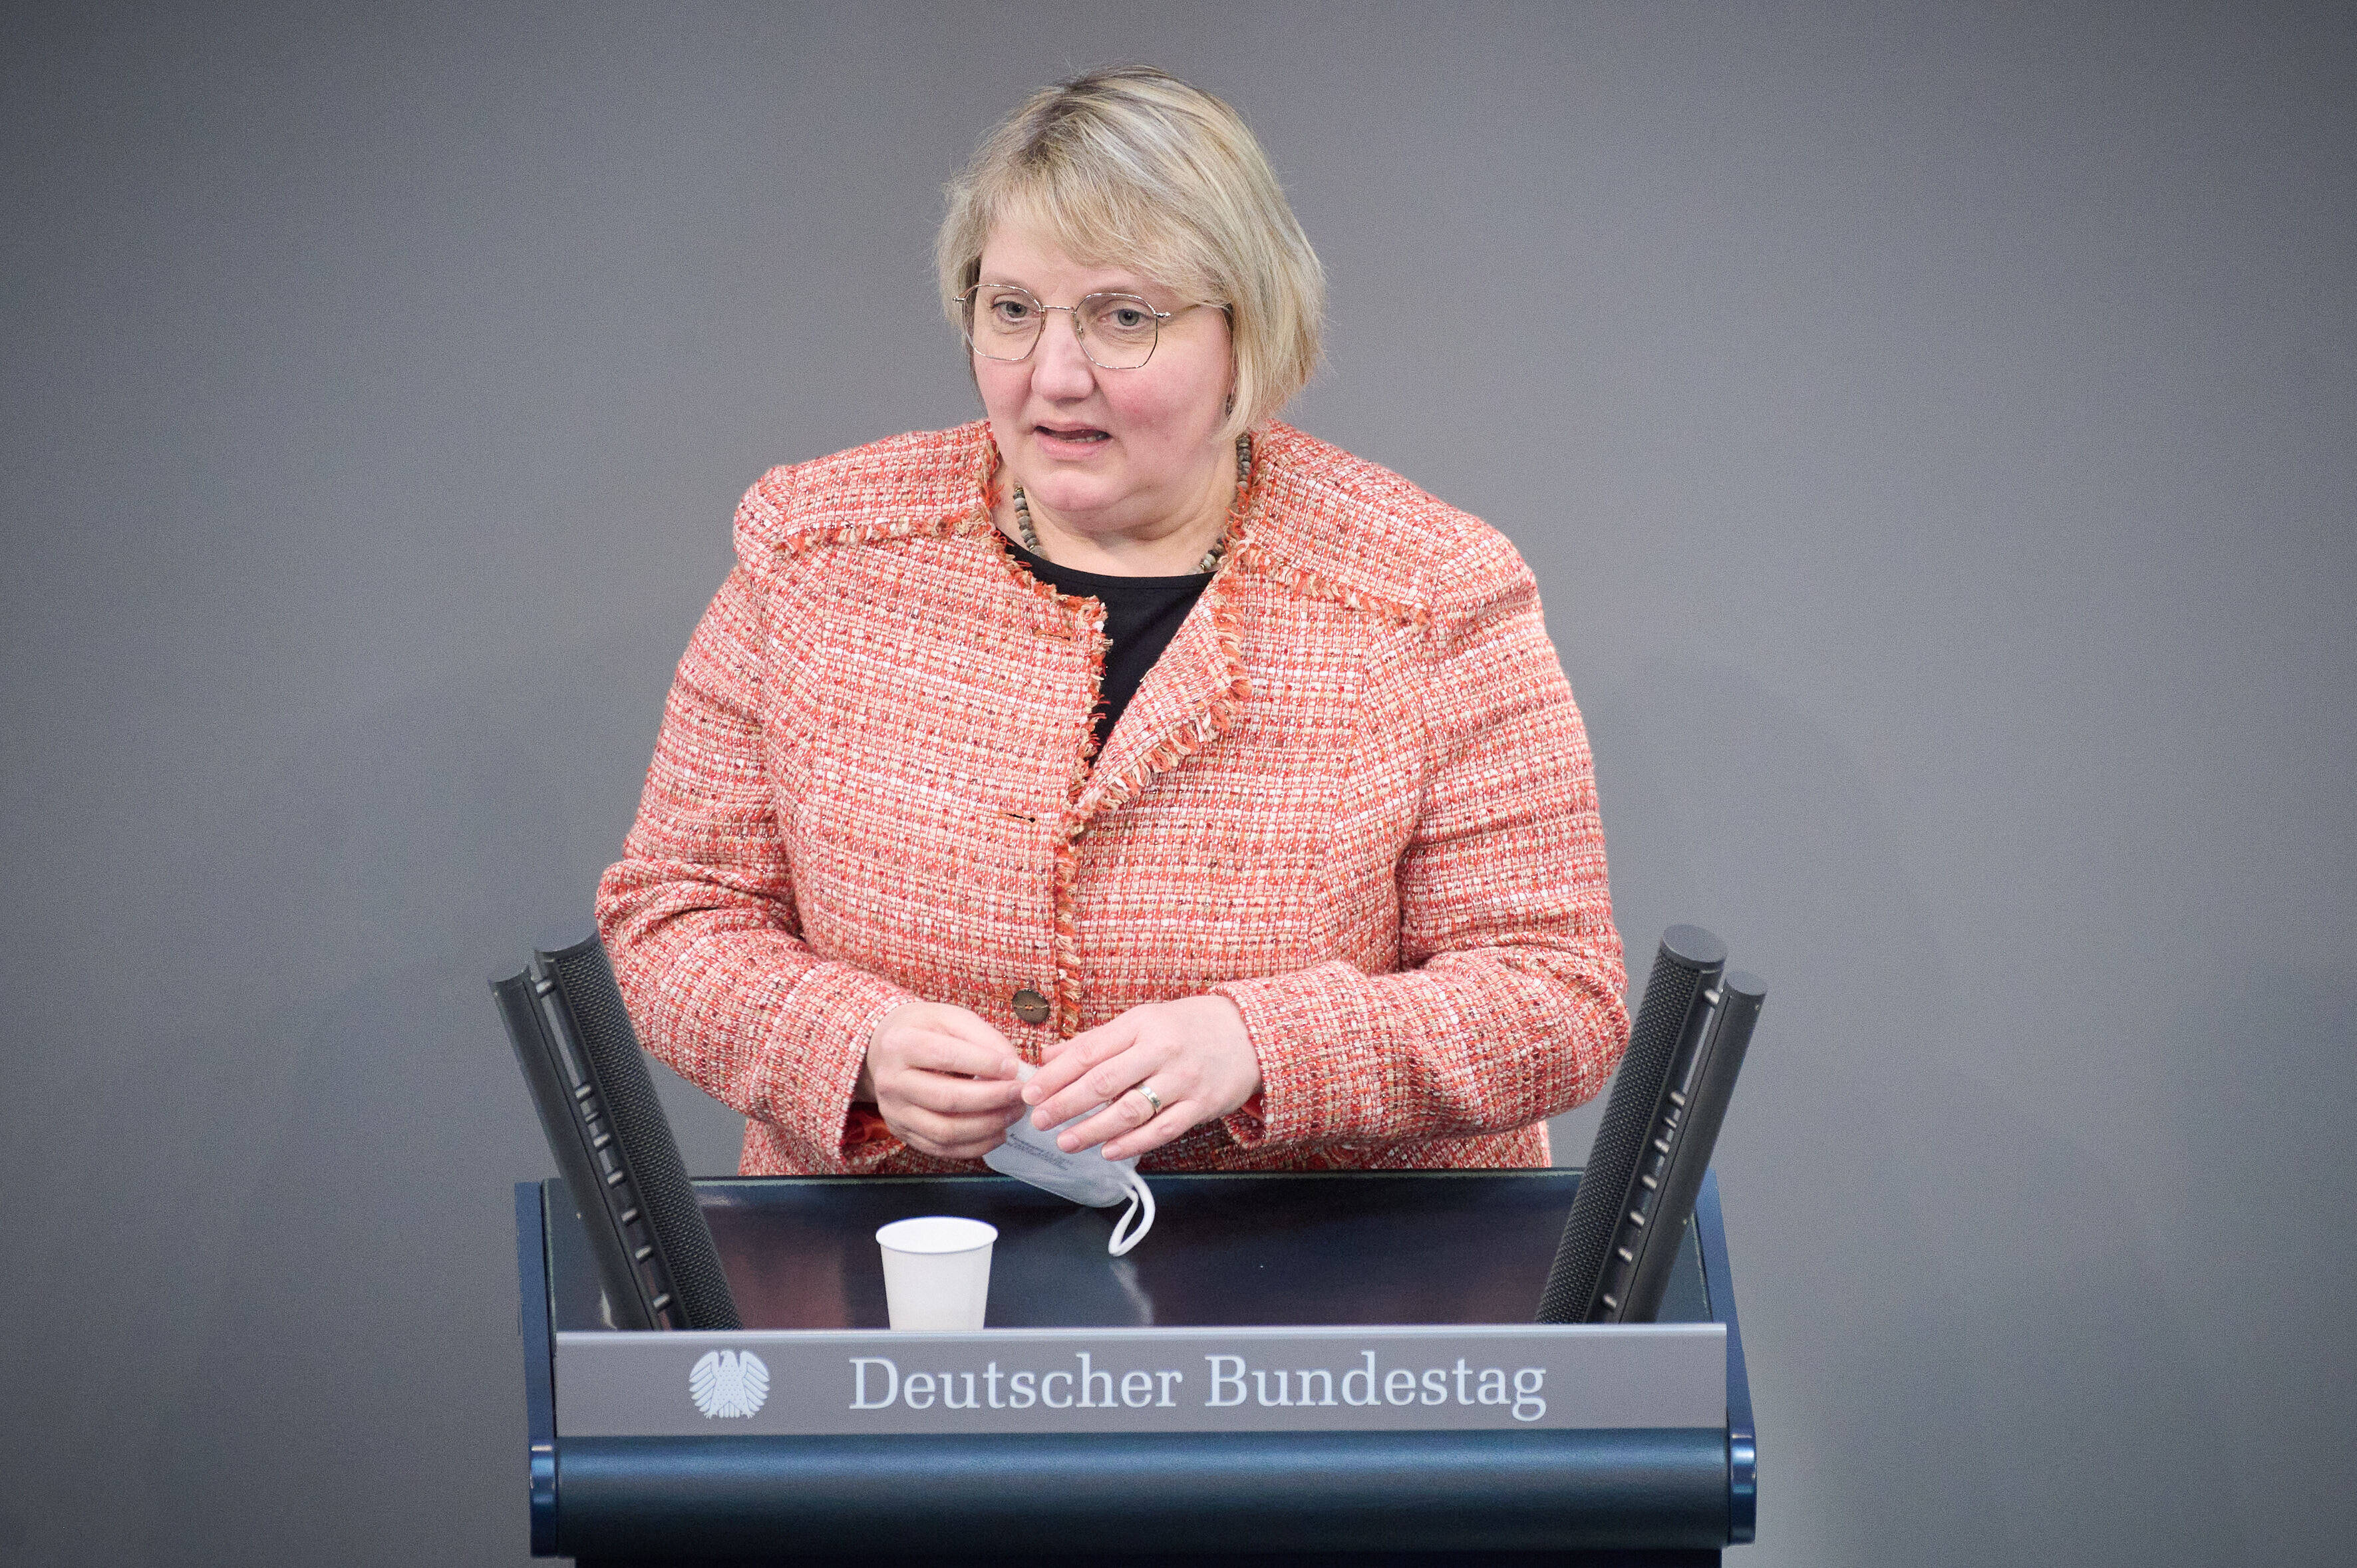 Katja Mast, Erste Parlamentarische Geschäftsführerin der SPD-Bundestagsfraktion: Wir haben die konsequenteste Wahlrechtsreform in der Bundesrepublik Deutschland seit Jahrzehnten beschlossen.